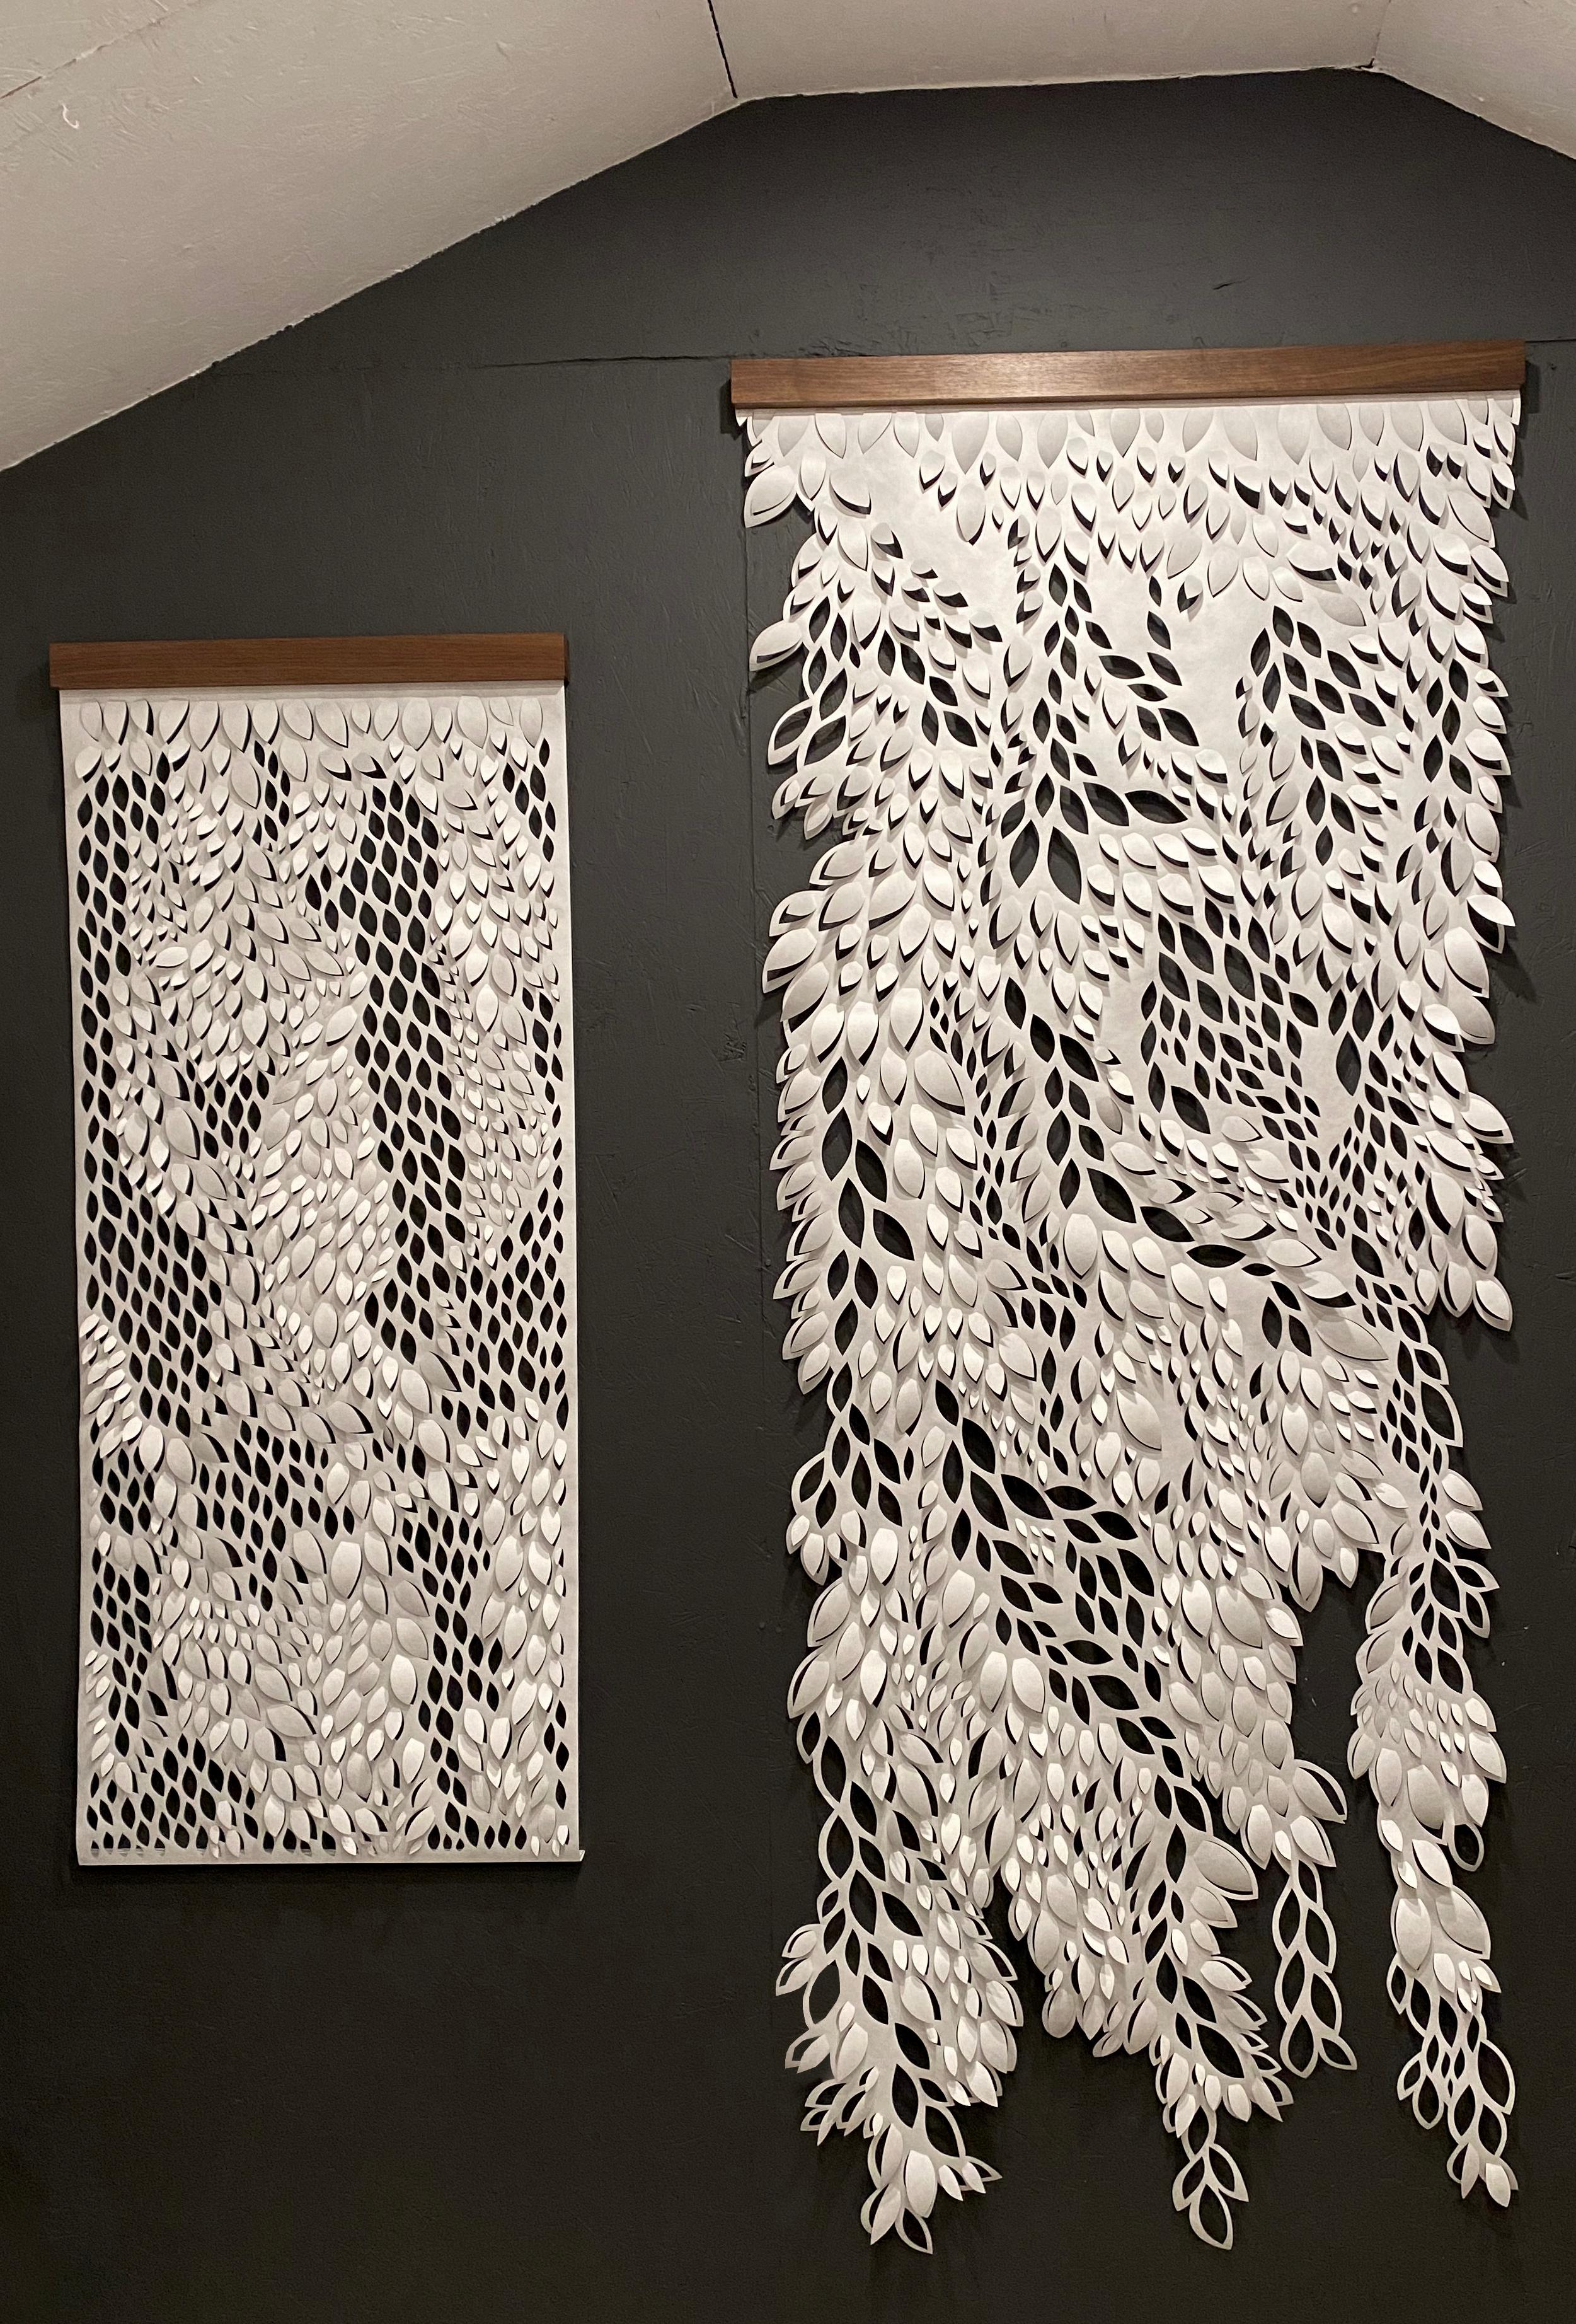 Hand-cut Paper Scroll, Sculptural Wall Hangings 60x36 - Sculpture by Summer J. Hart